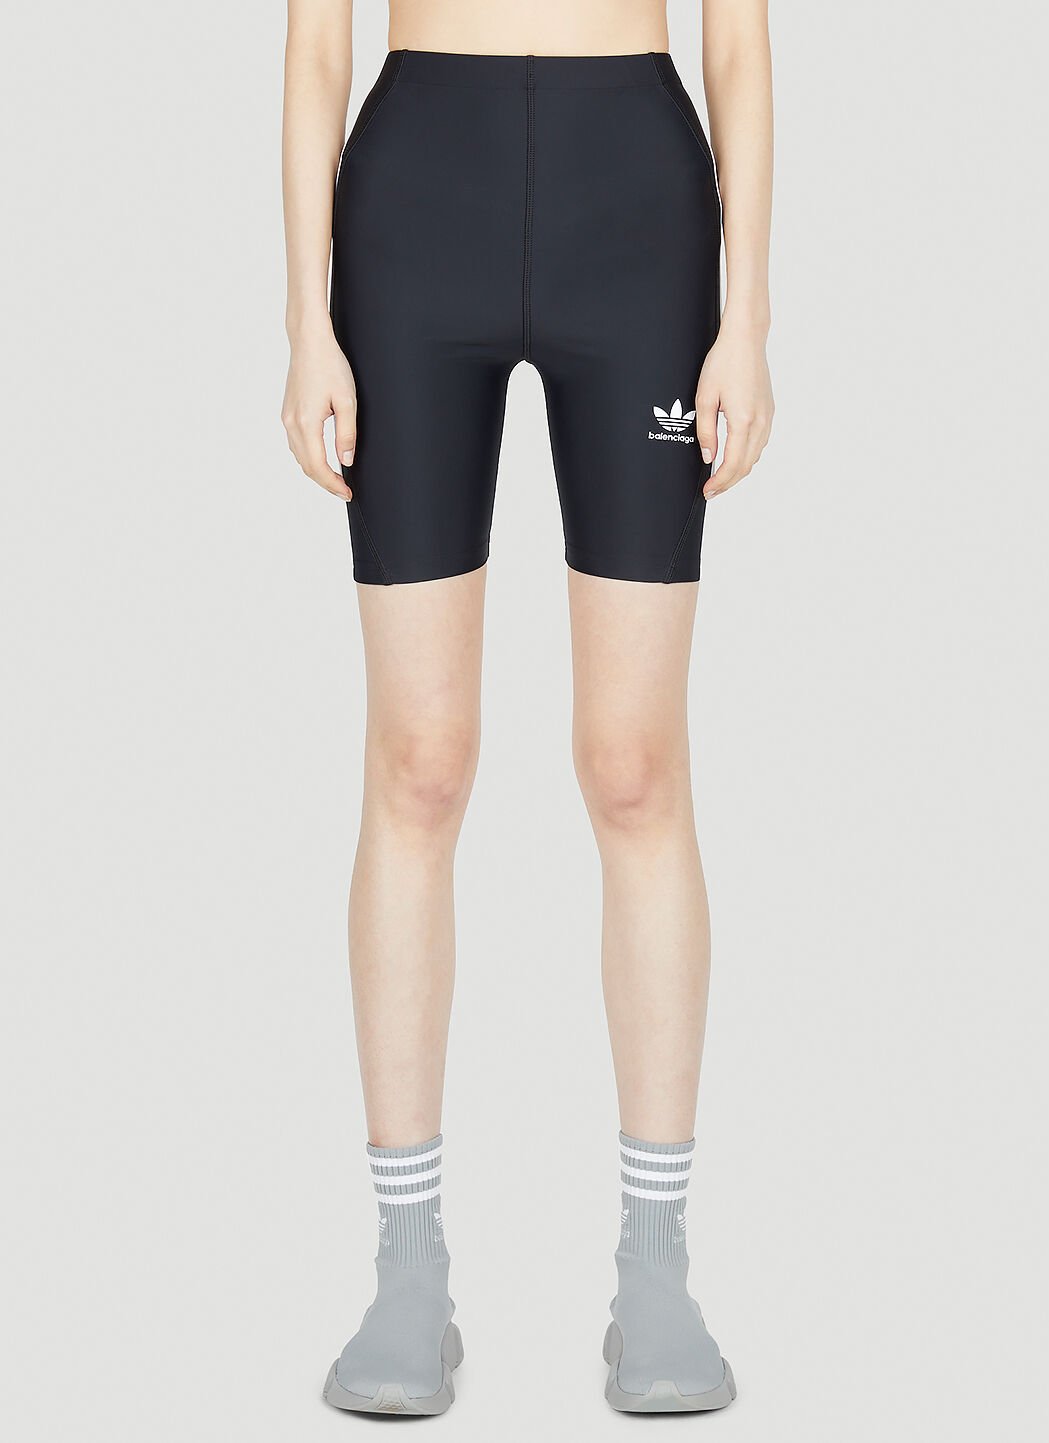 Max Mara Striped Cycling Shorts Brown max0256006